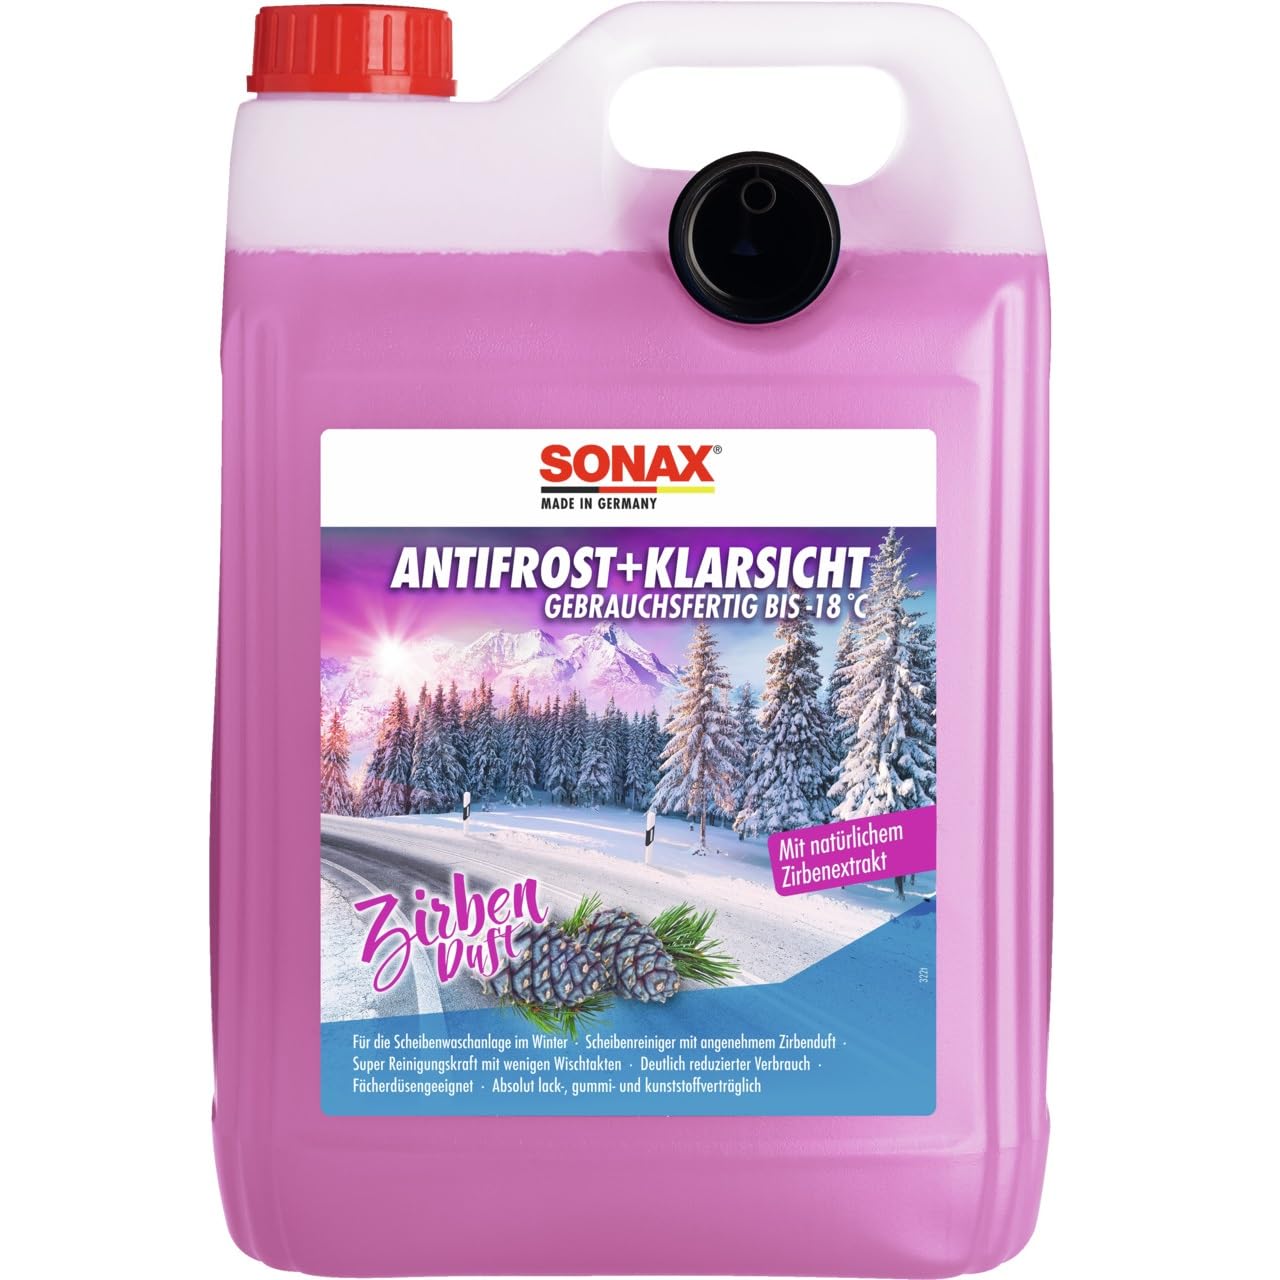 SONAX AntiFrost+KlarSicht Gebrauchsfertig bis -18 °C Zirbe (5 Liter) schneller, schlierenfreier & effektiver Scheibenreiniger für den Winter | Art-Nr. 01315050 von SONAX